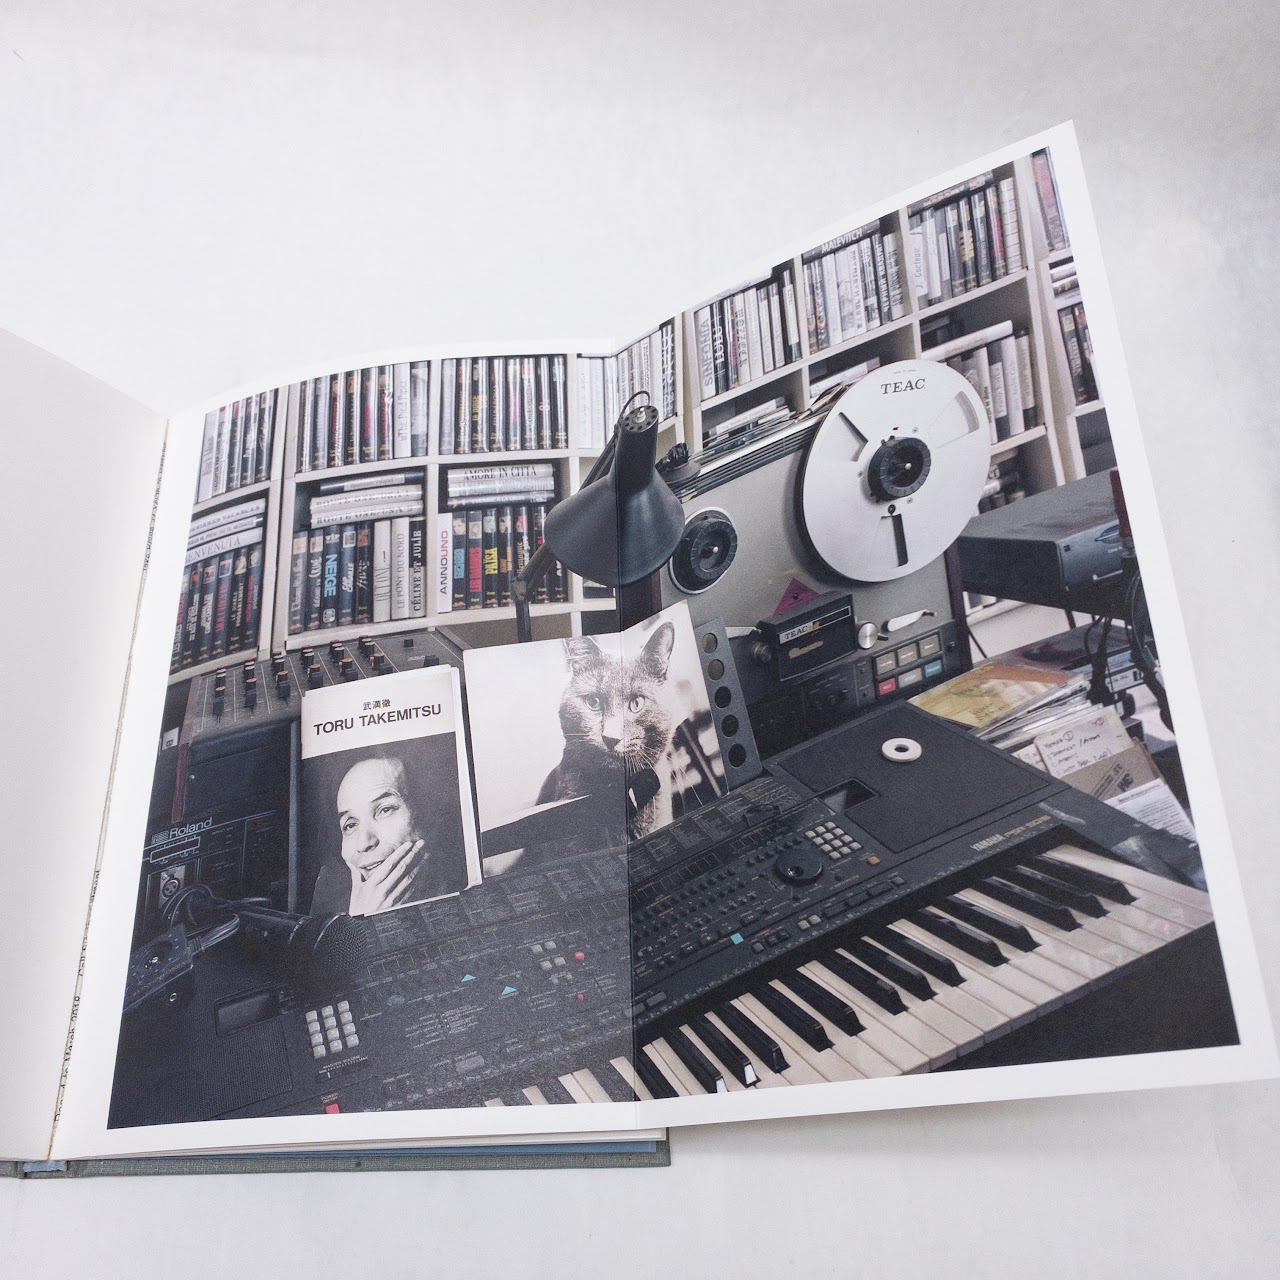 Adam Bartos and Colin MacCabe "Studio: Remembering Chris Marker" rare Book